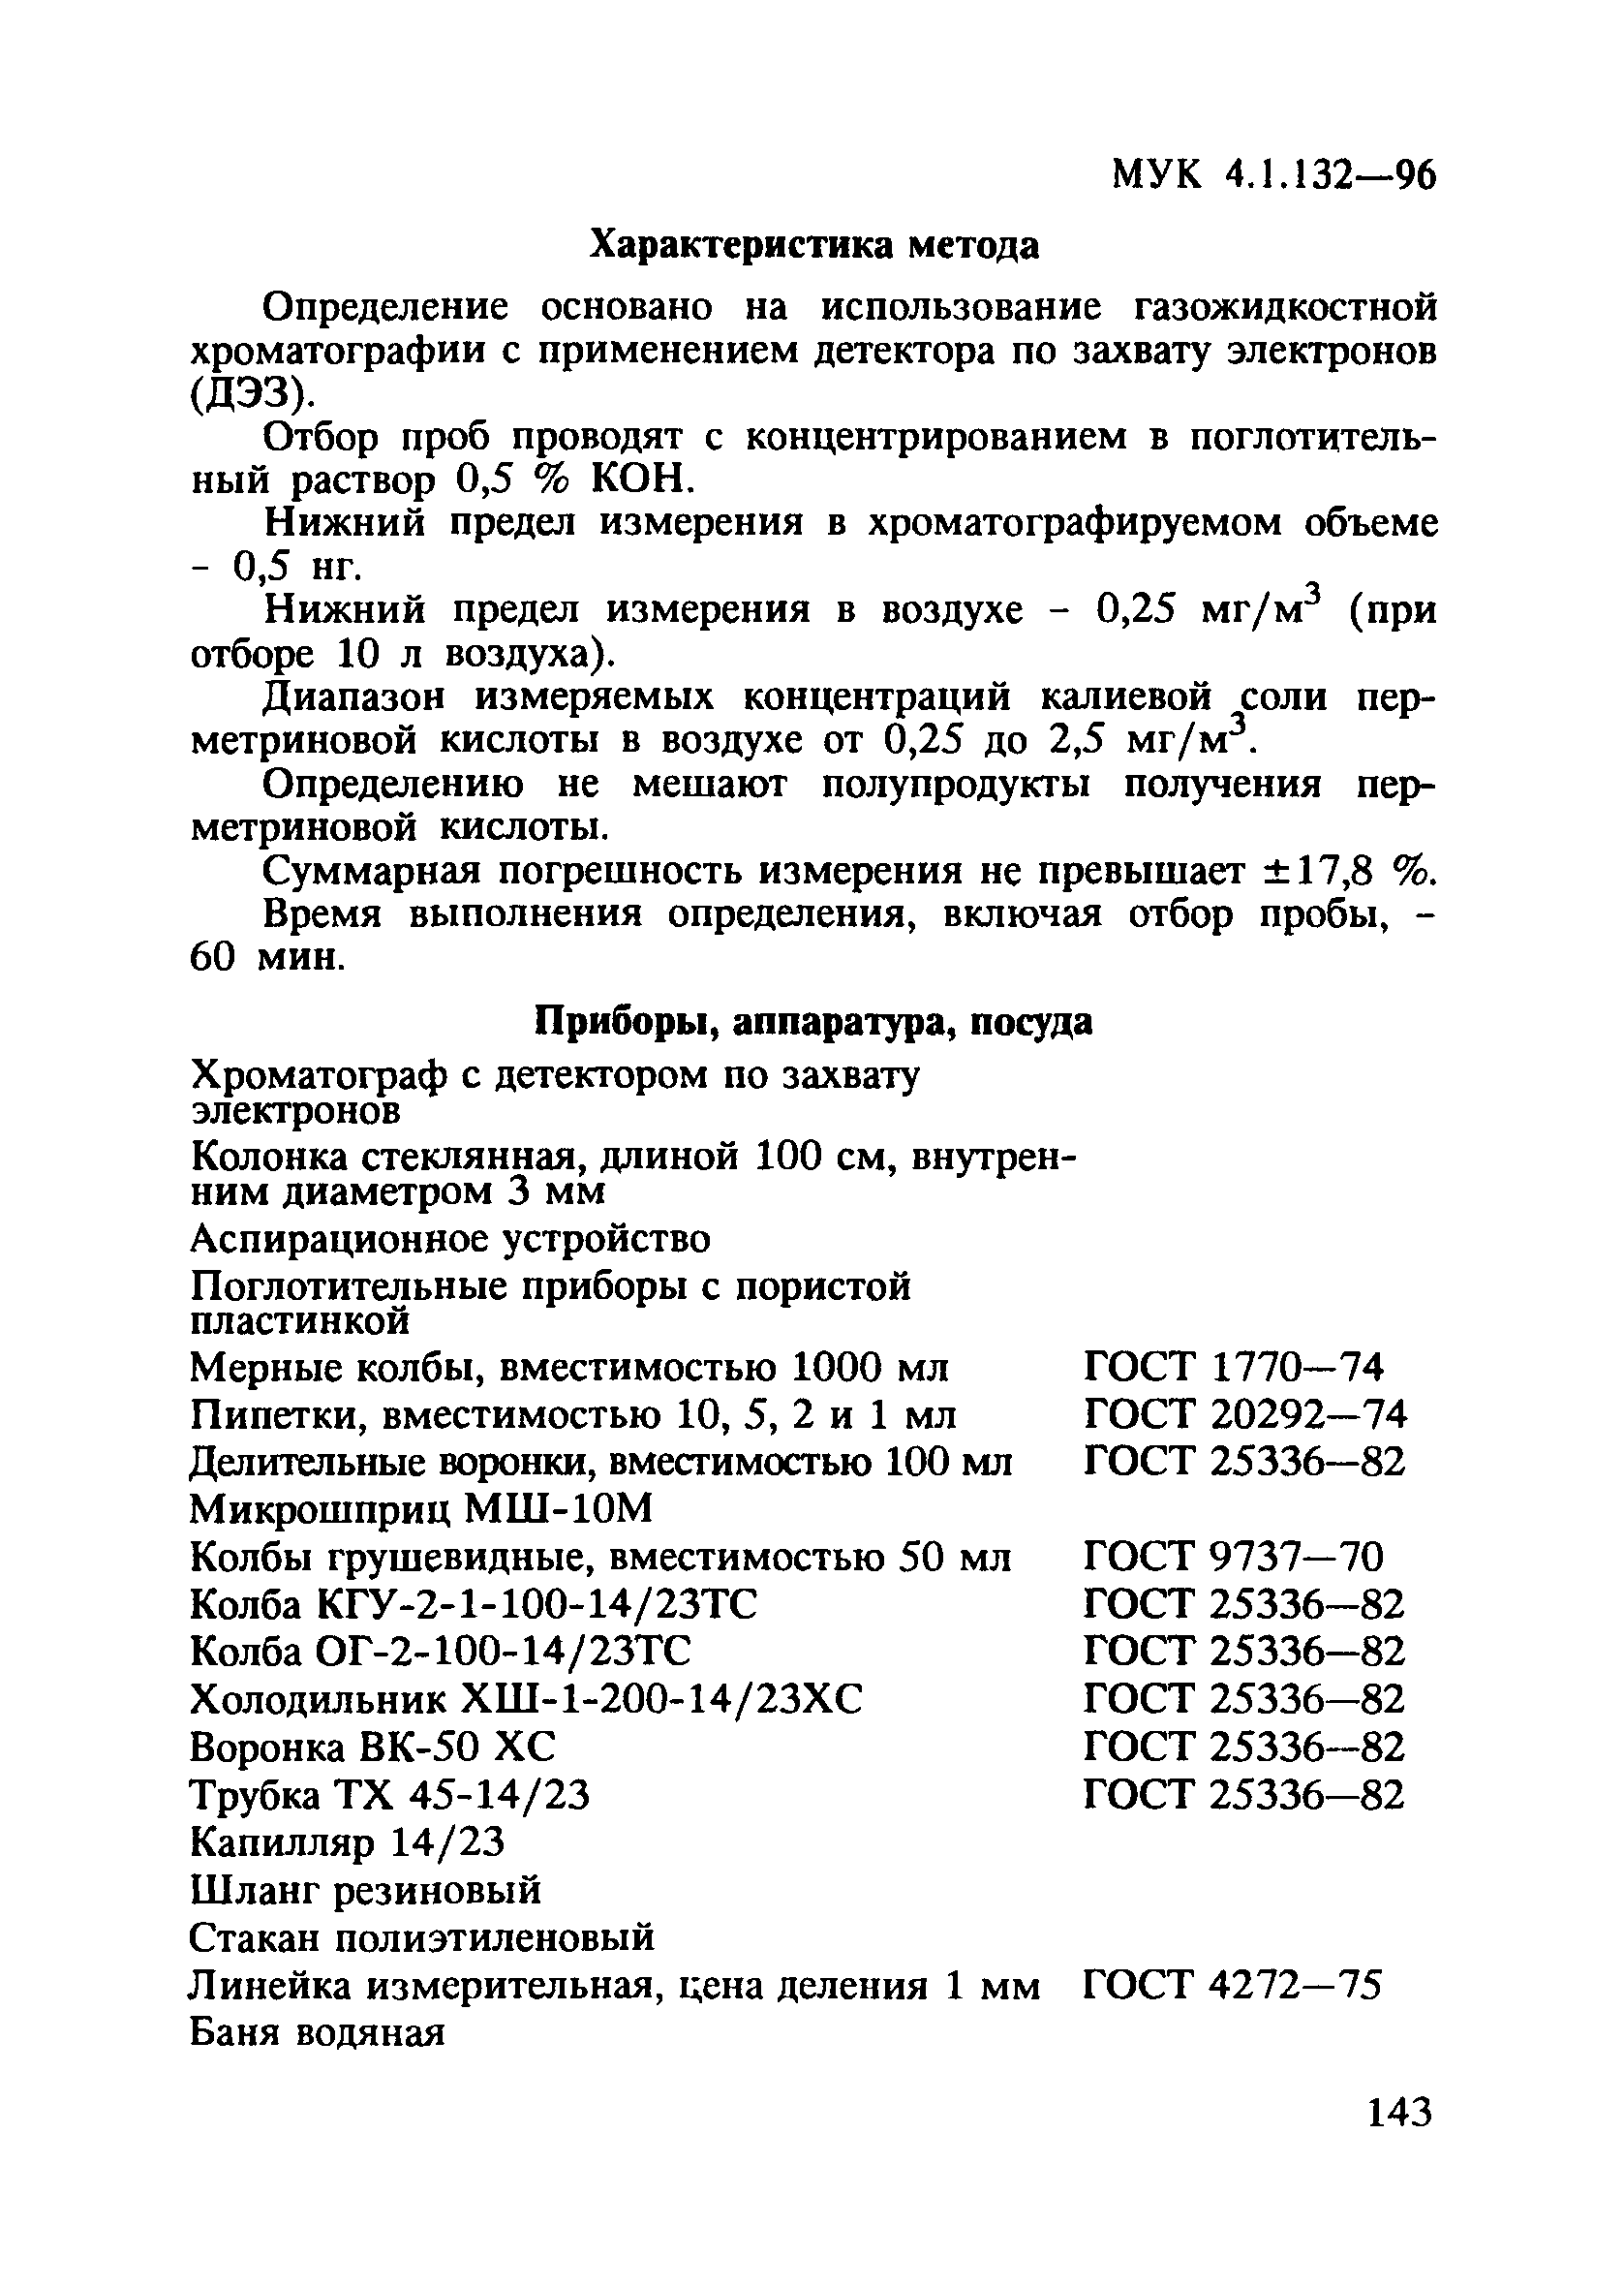 МУК 4.1.132-96